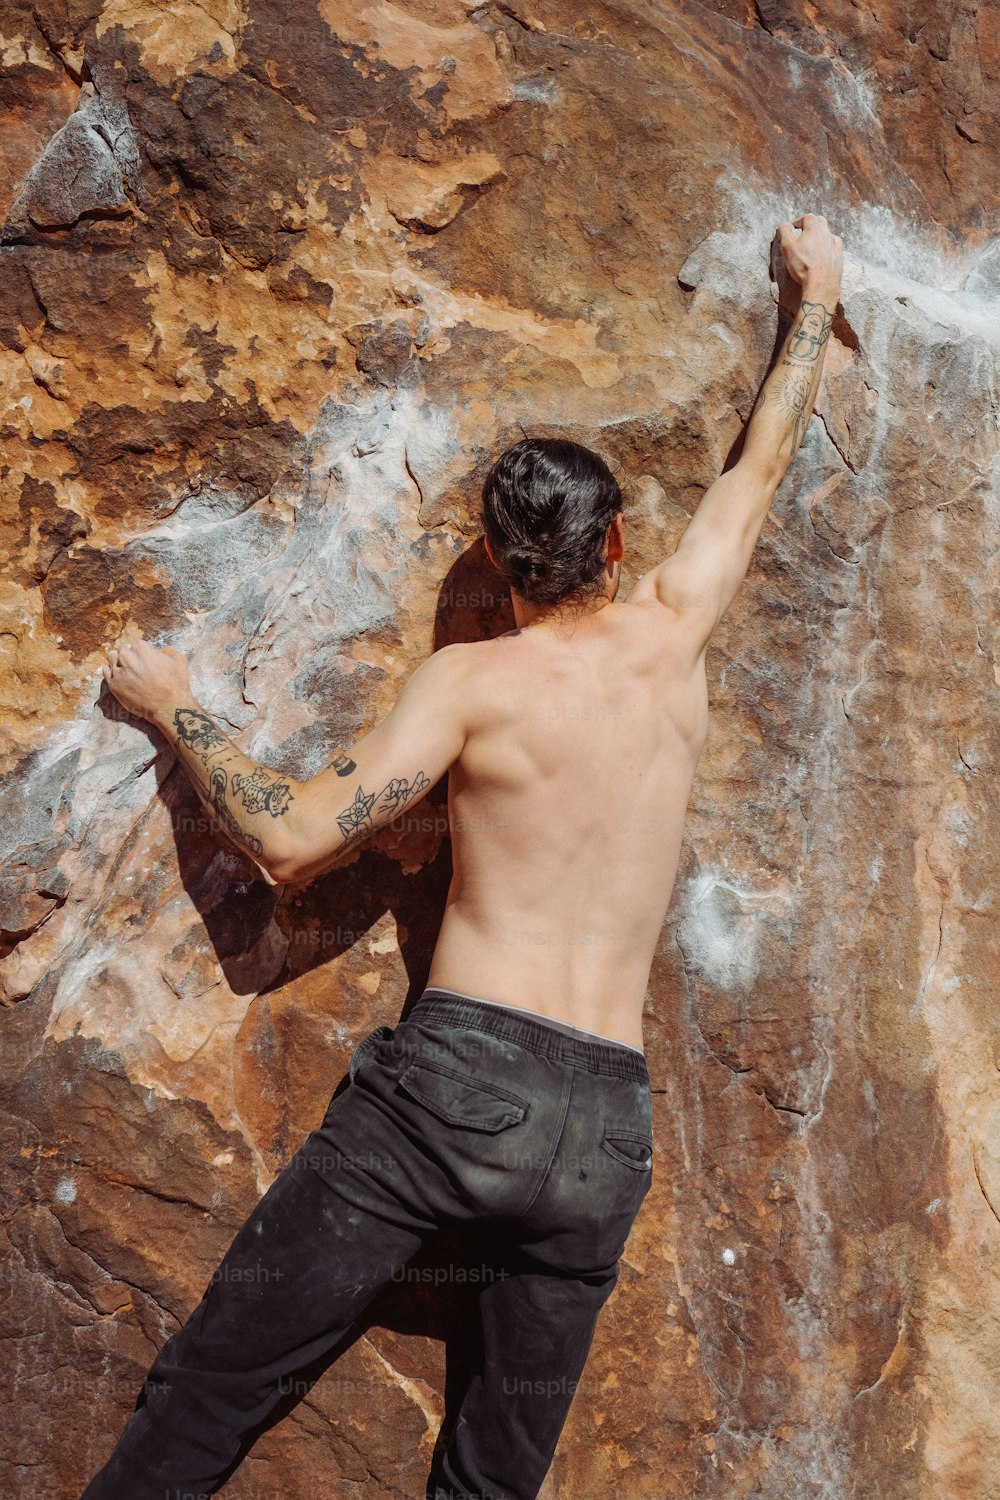 a man climbing a rock wall